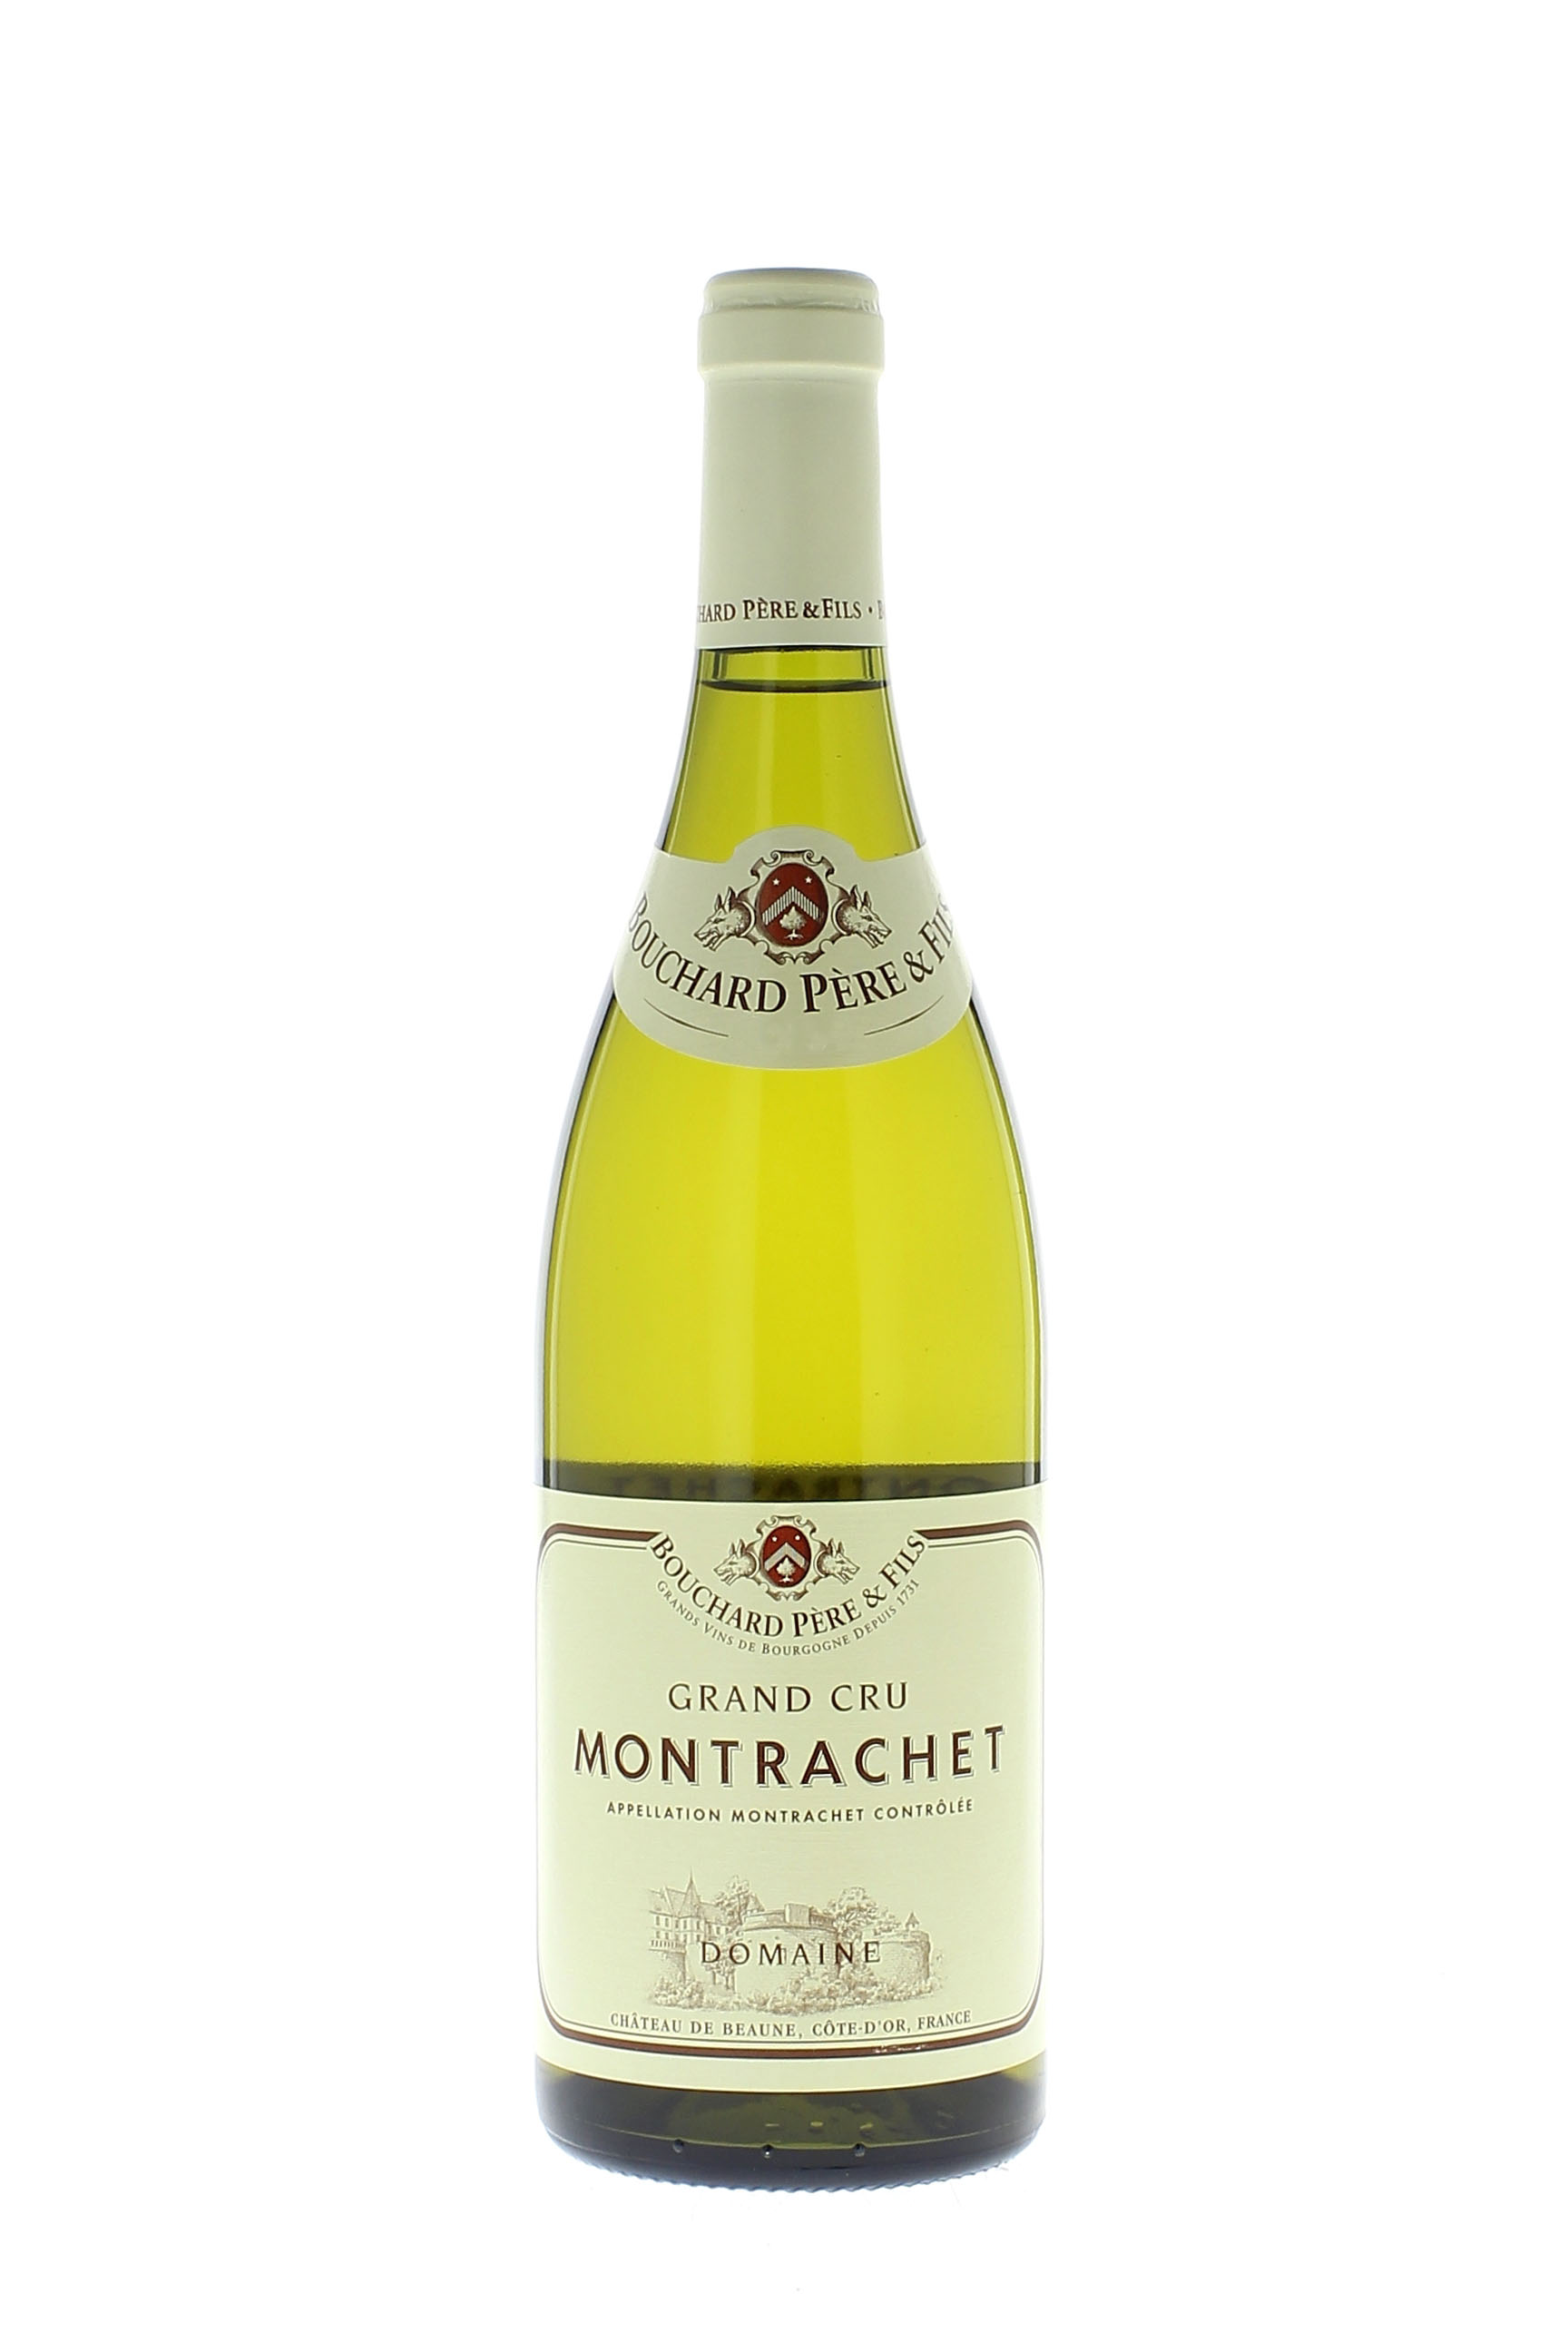 Montrachet grand cru 2000  BOUCHARD Pre et fils, Bourgogne blanc